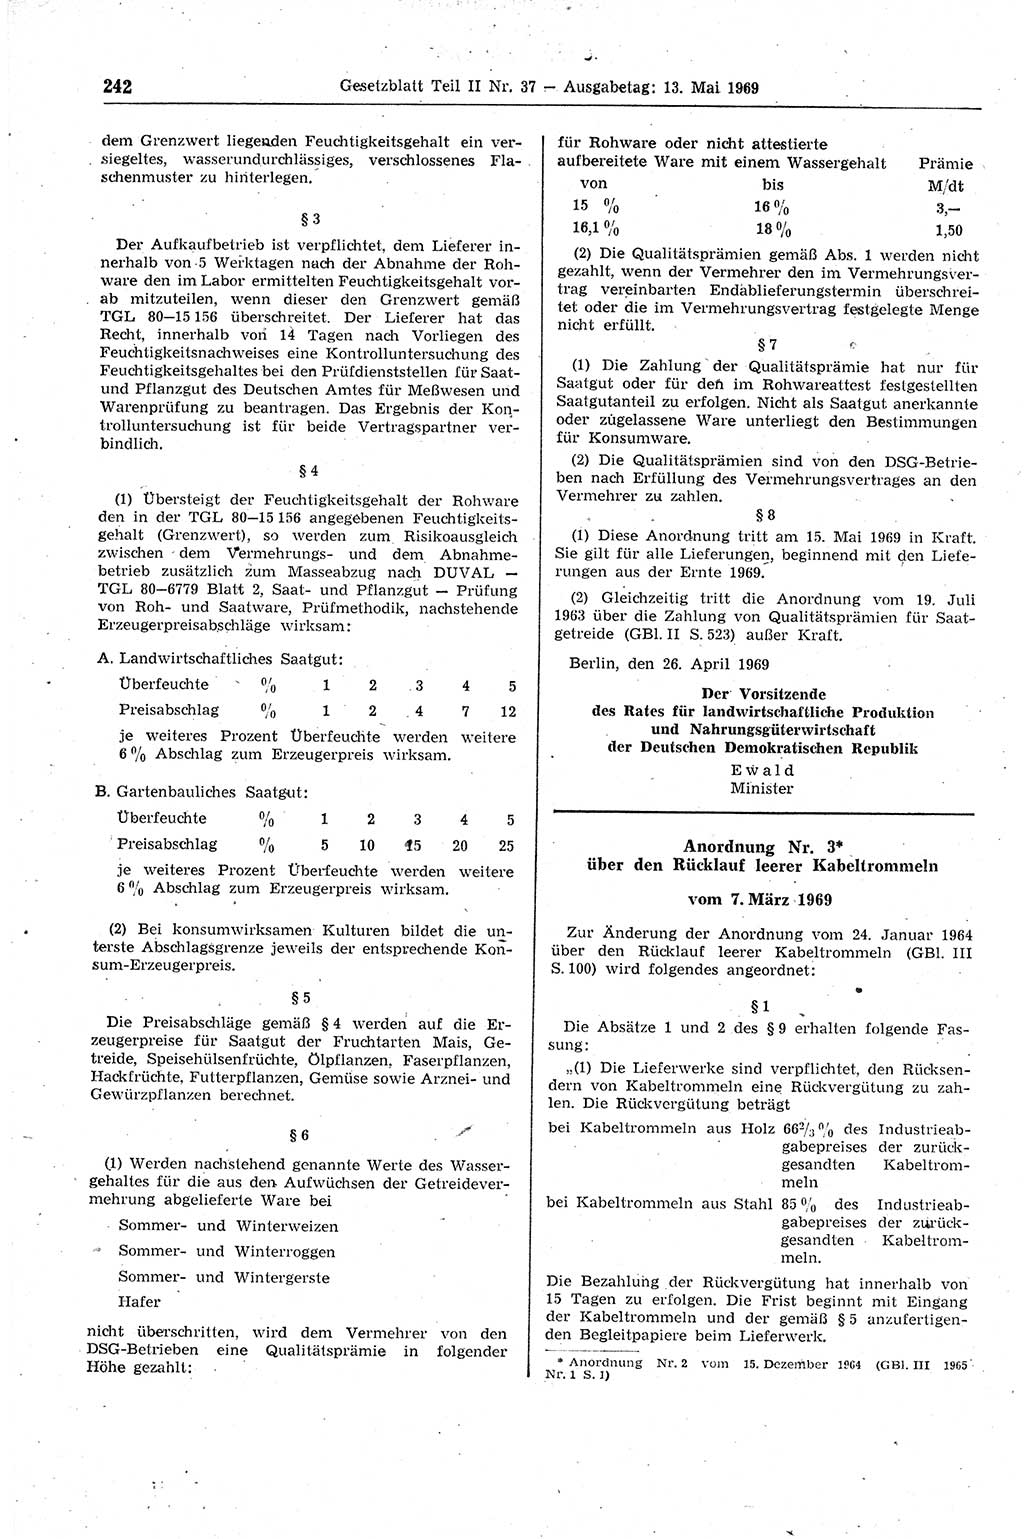 Gesetzblatt (GBl.) der Deutschen Demokratischen Republik (DDR) Teil ⅠⅠ 1969, Seite 242 (GBl. DDR ⅠⅠ 1969, S. 242)